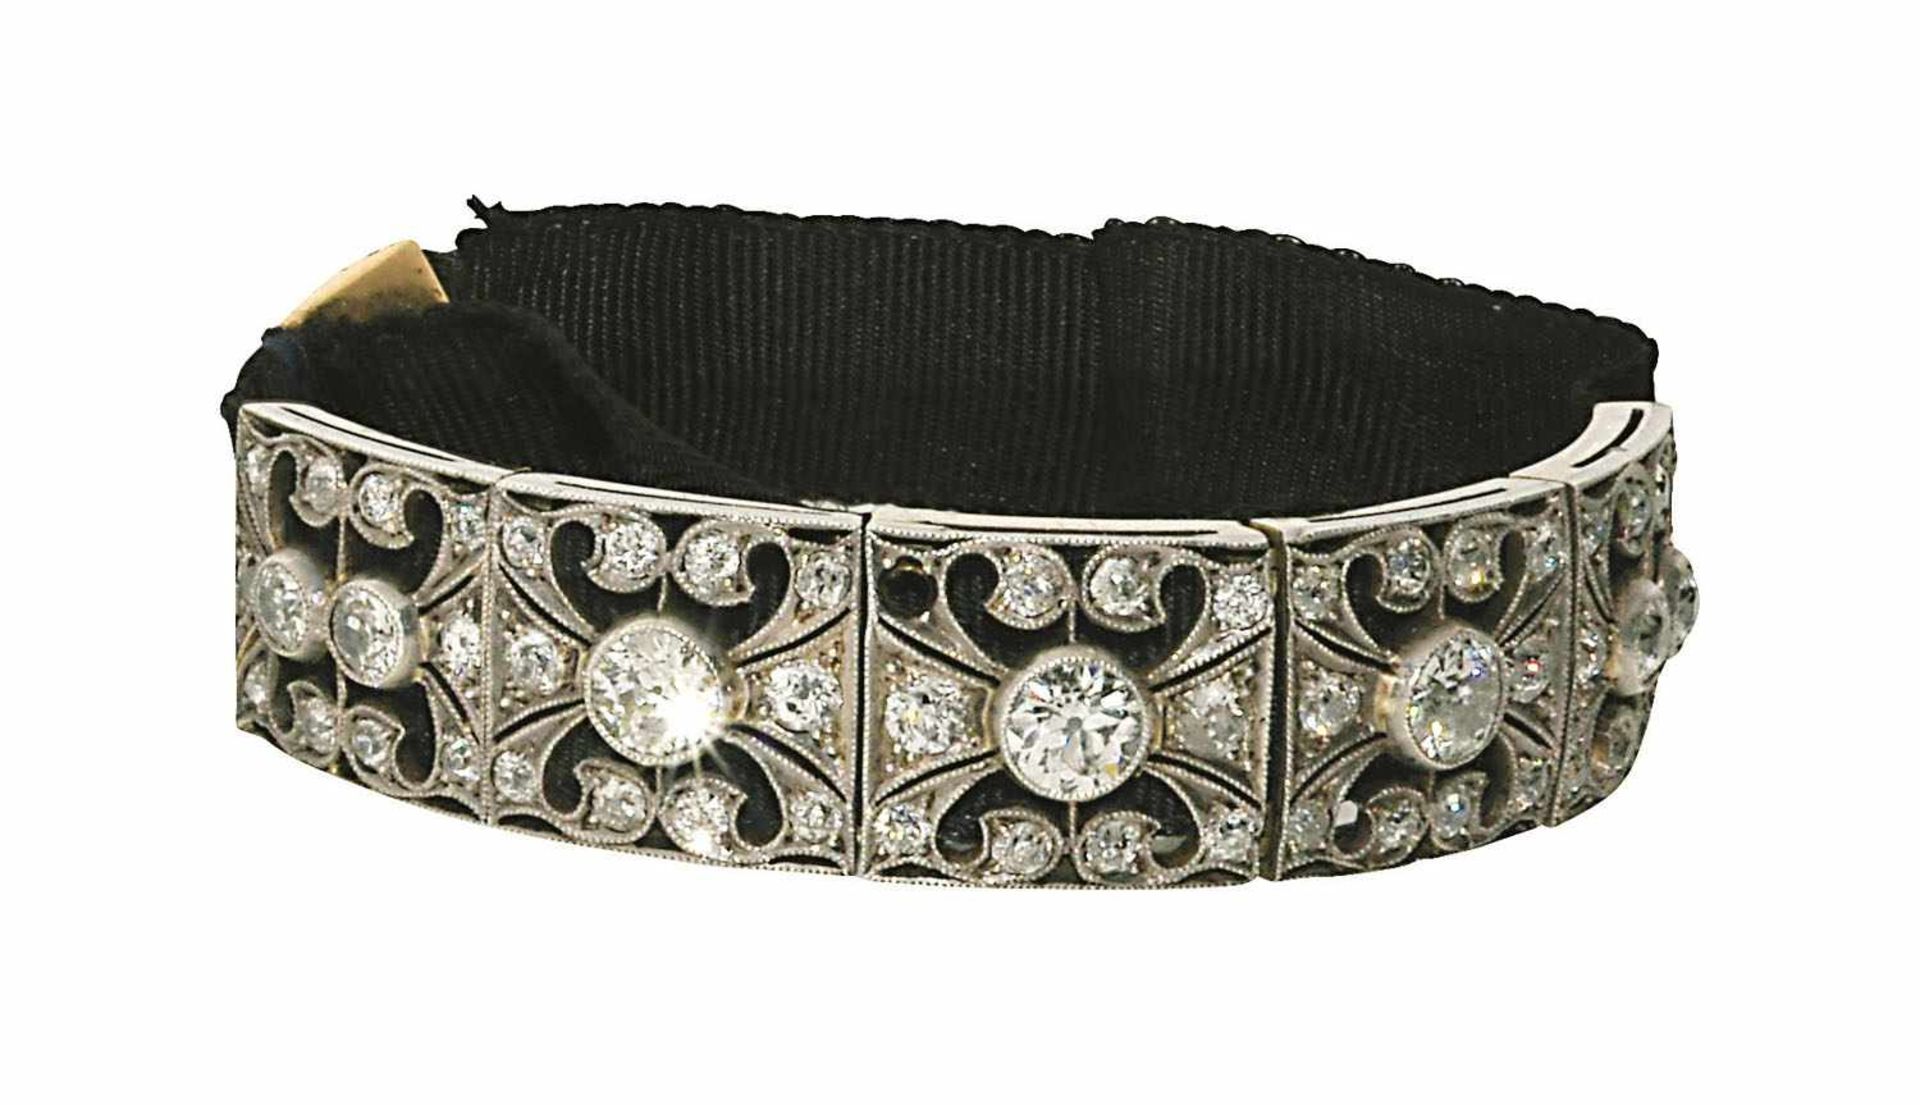 Armband Um 1900 14 K WG. Schwarzes Ripsband, mittig aufgezogenes Schmuckelement, besetzt mit 45